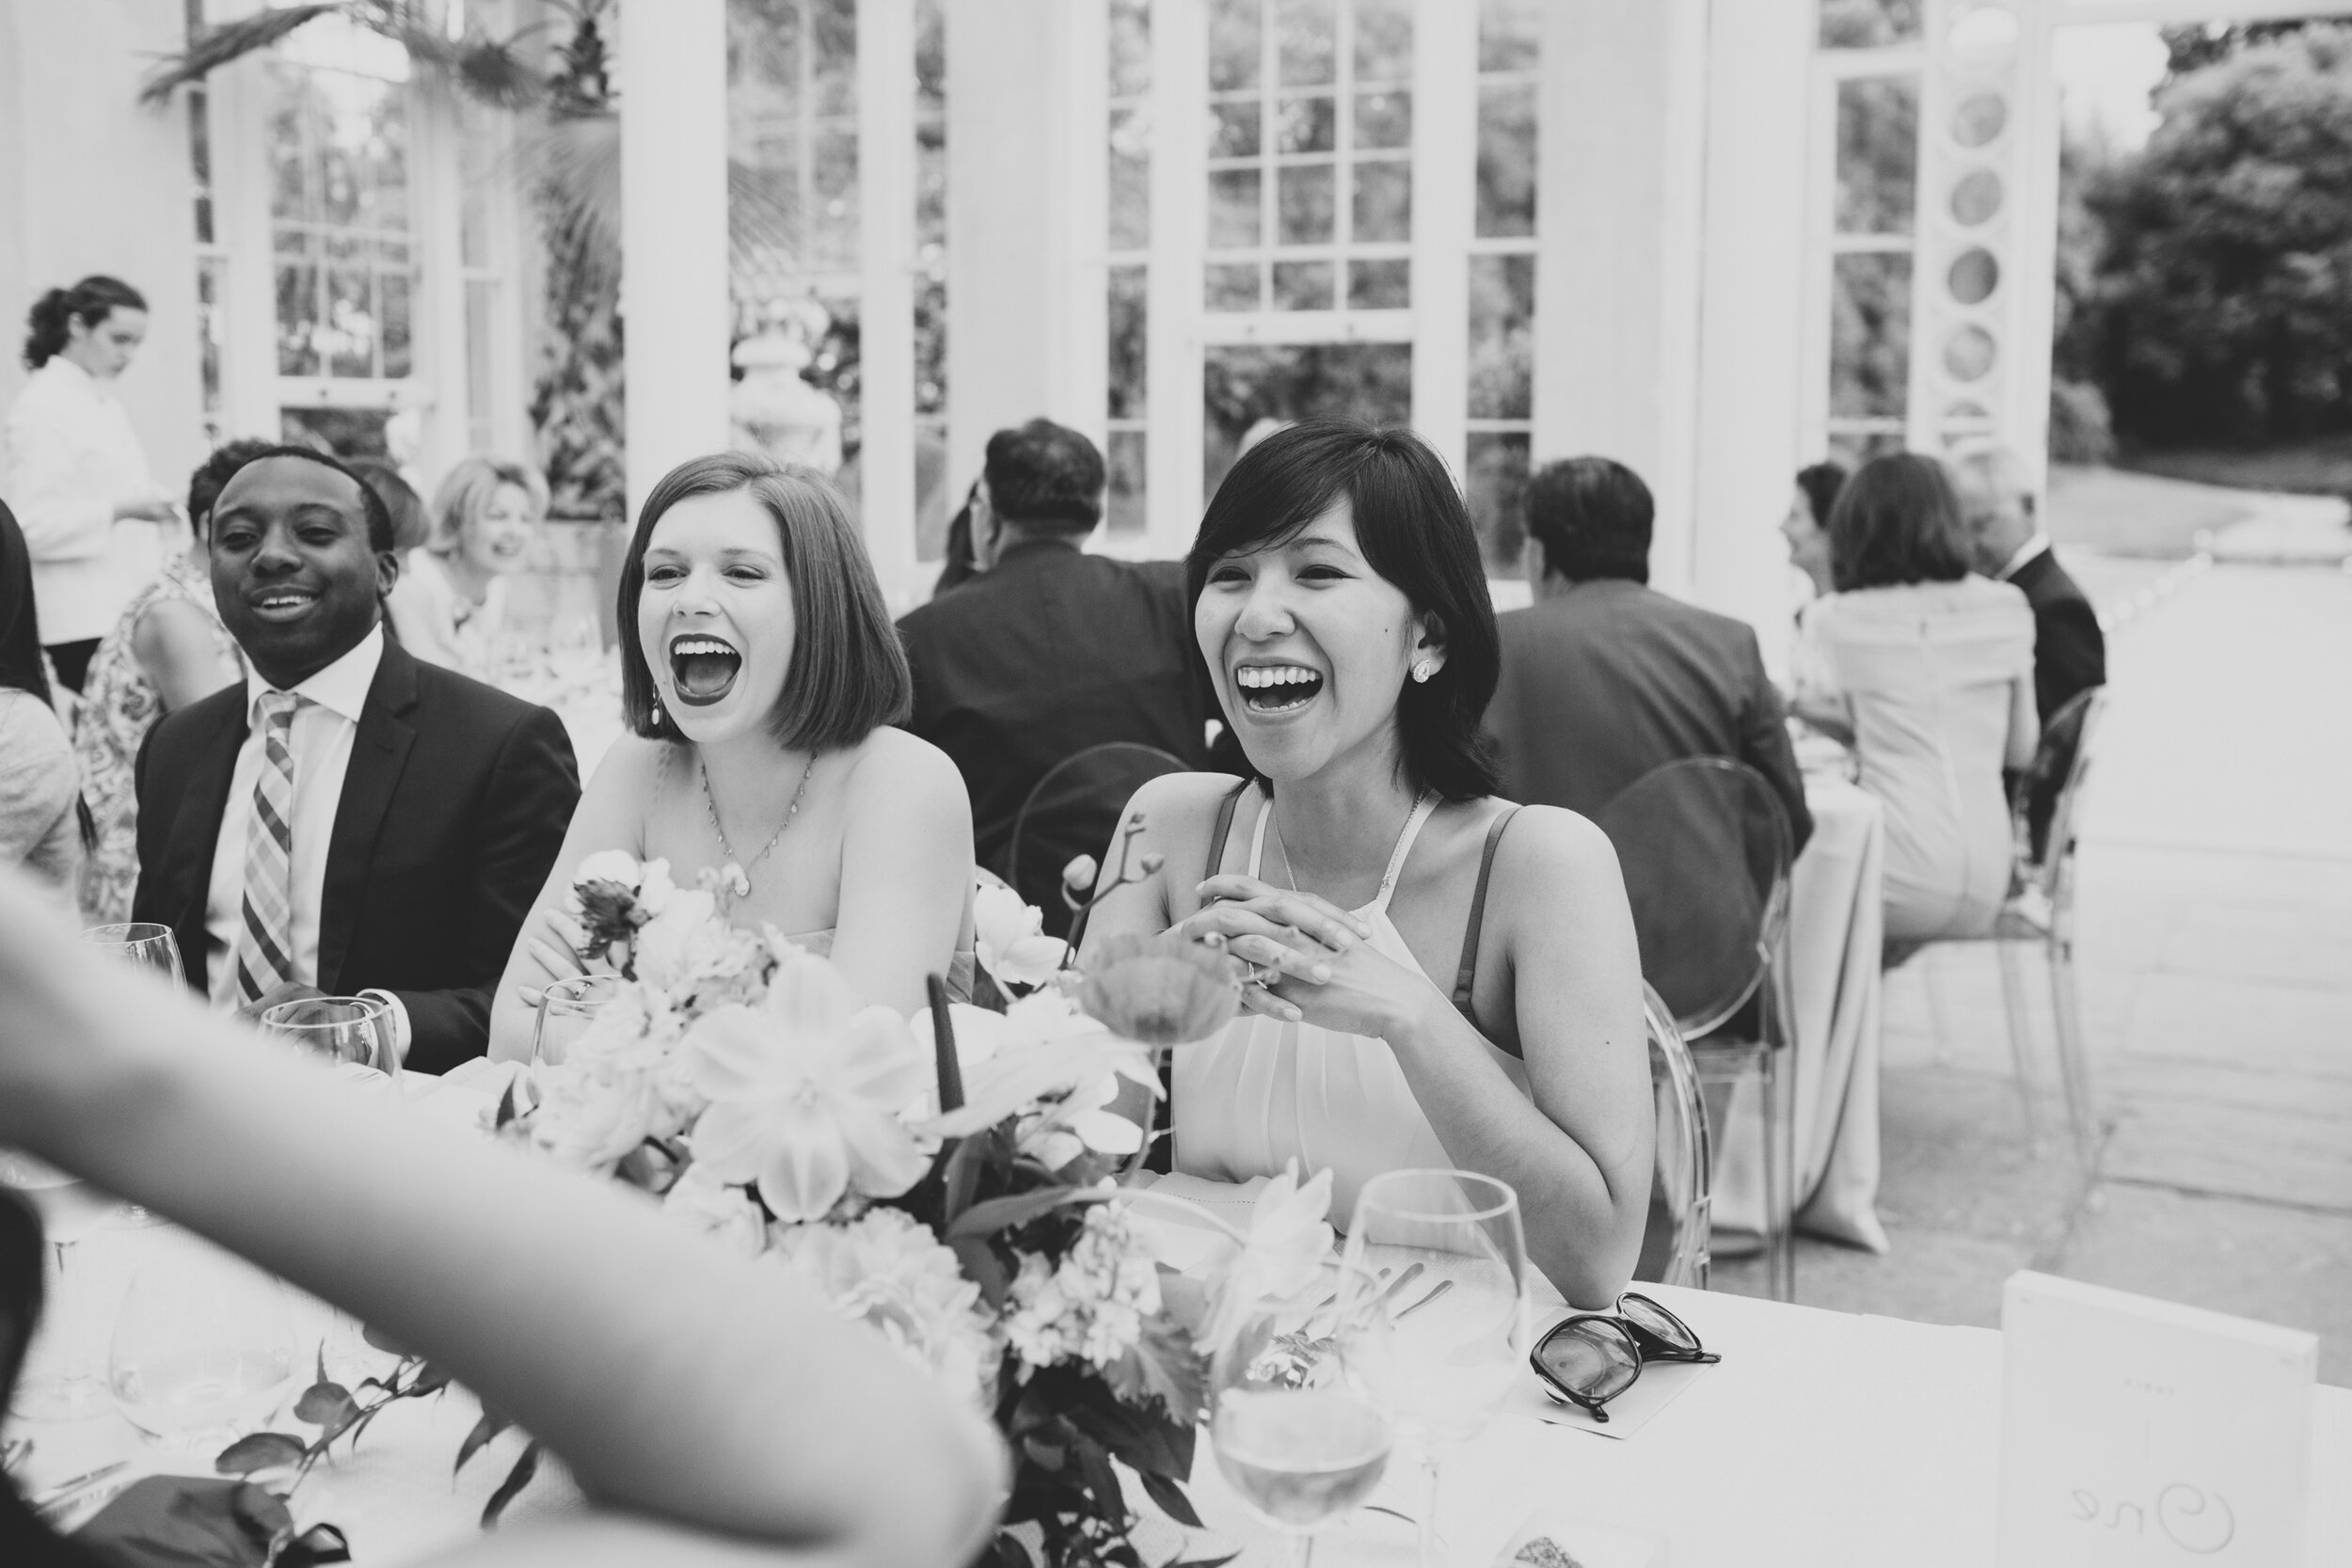 Guests laughing at a wedding at Syon Park